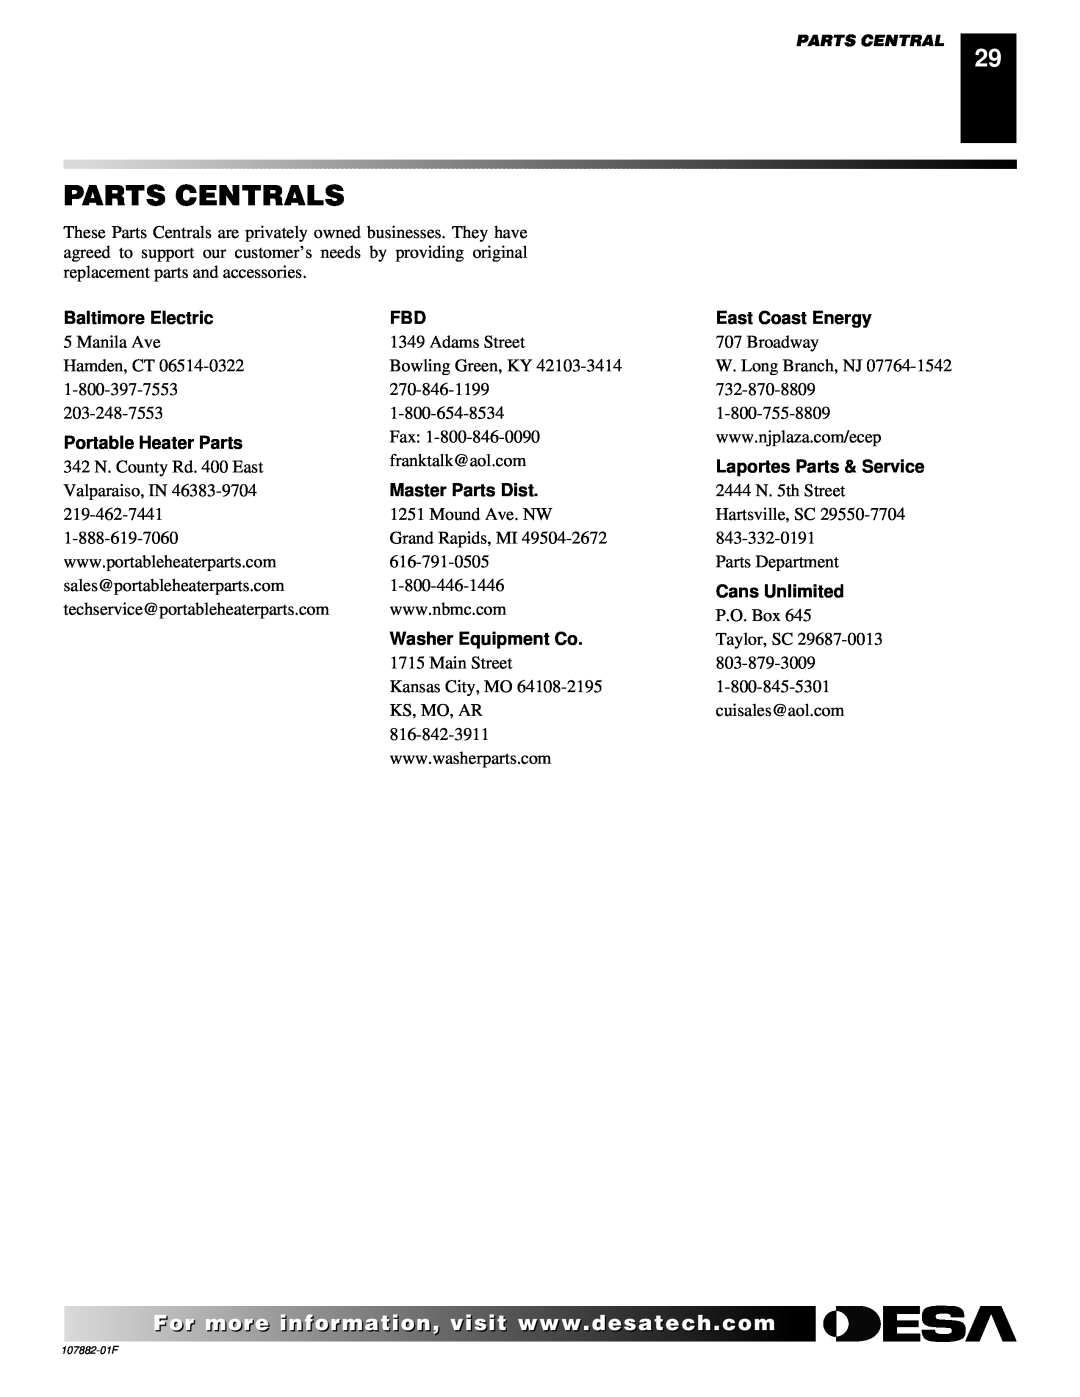 Desa CBN20 Parts Centrals, Baltimore Electric, East Coast Energy, Portable Heater Parts, Laportes Parts & Service 